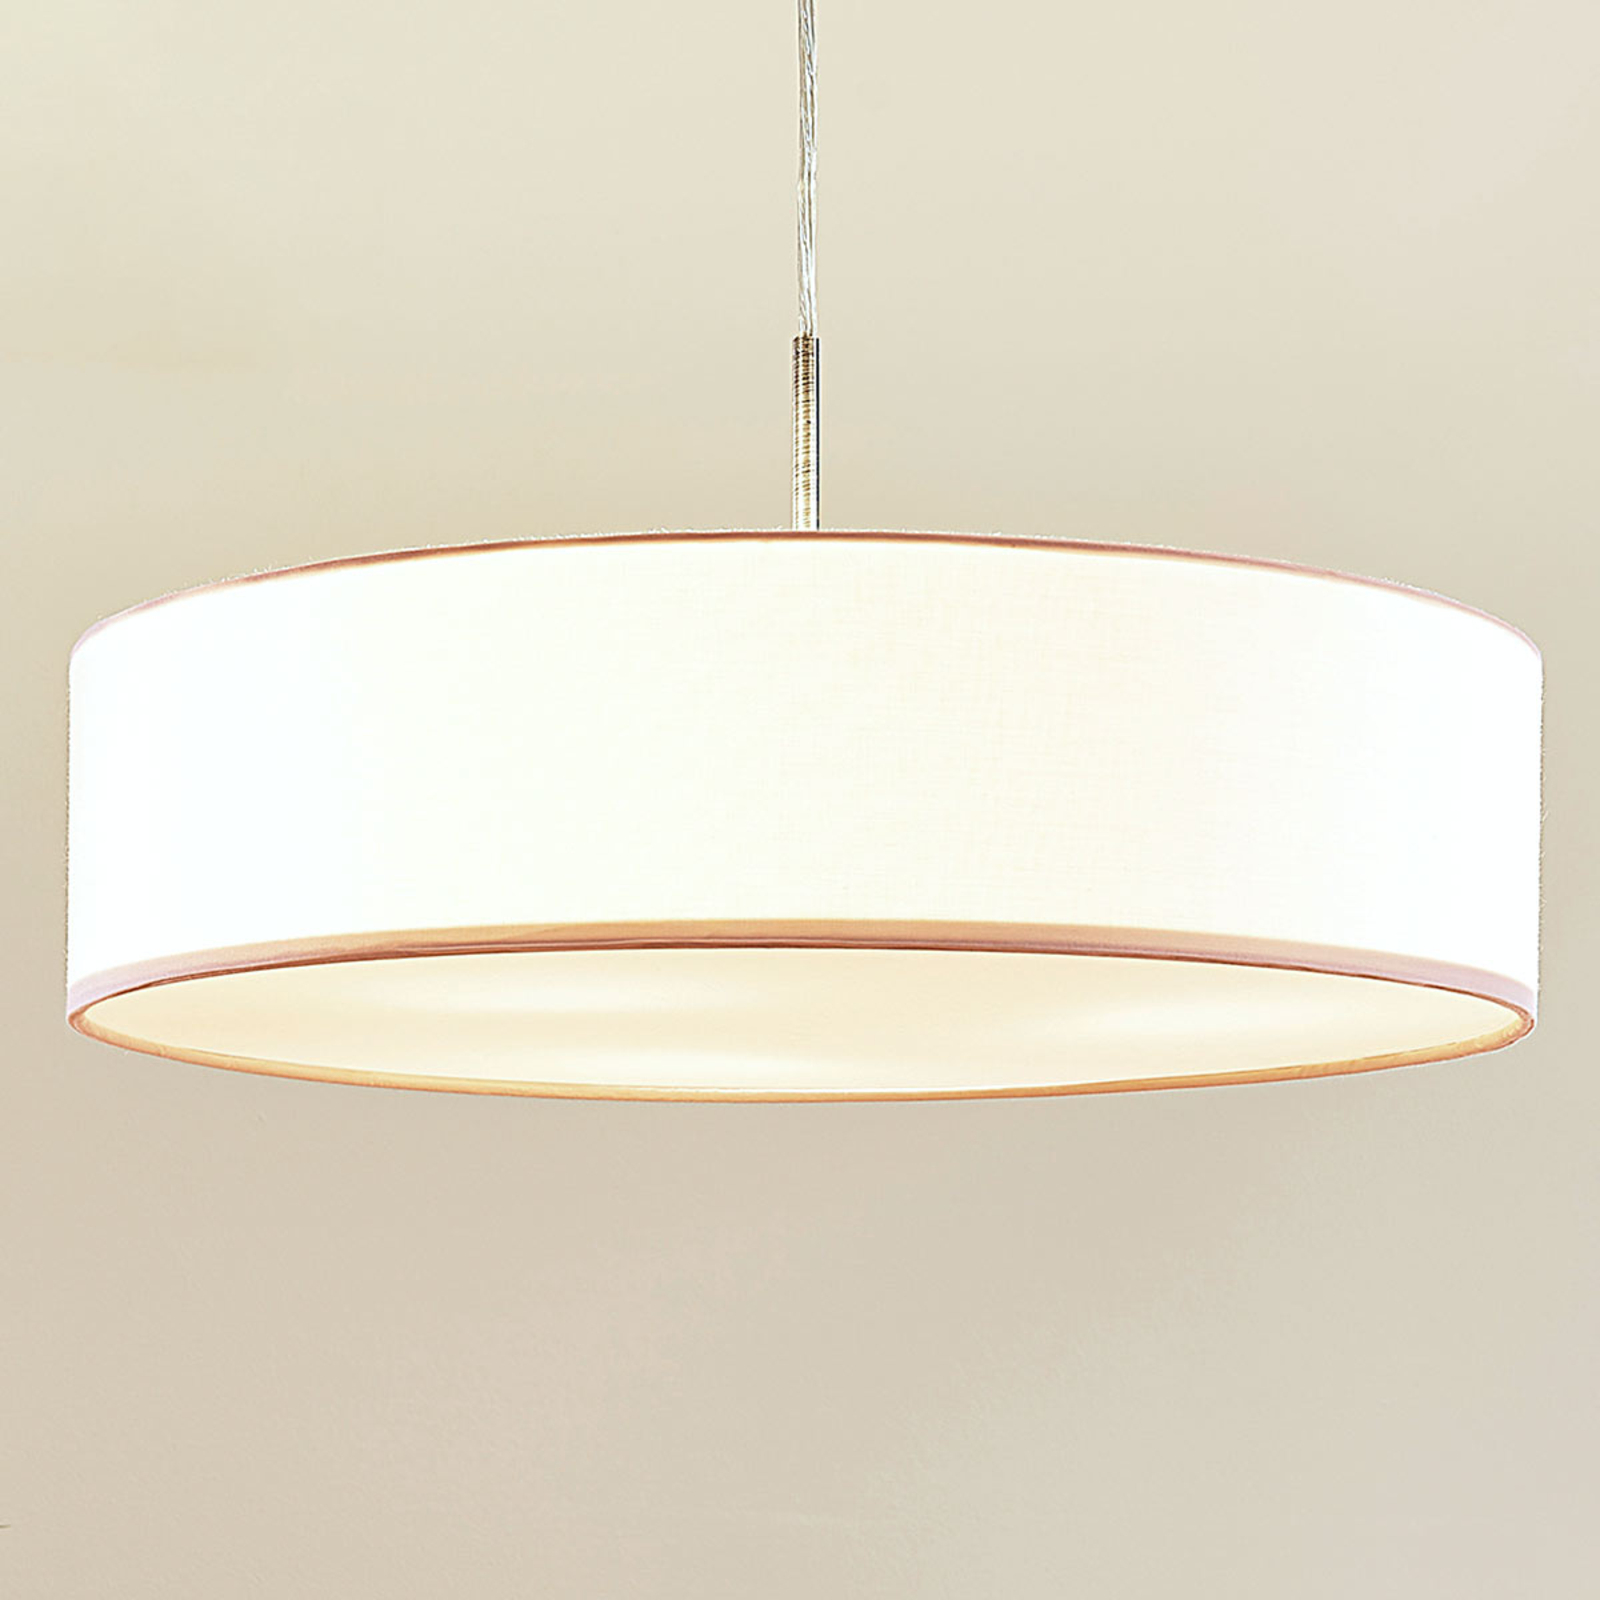 Sebatin hængelampe, E27, 50 cm, hvid